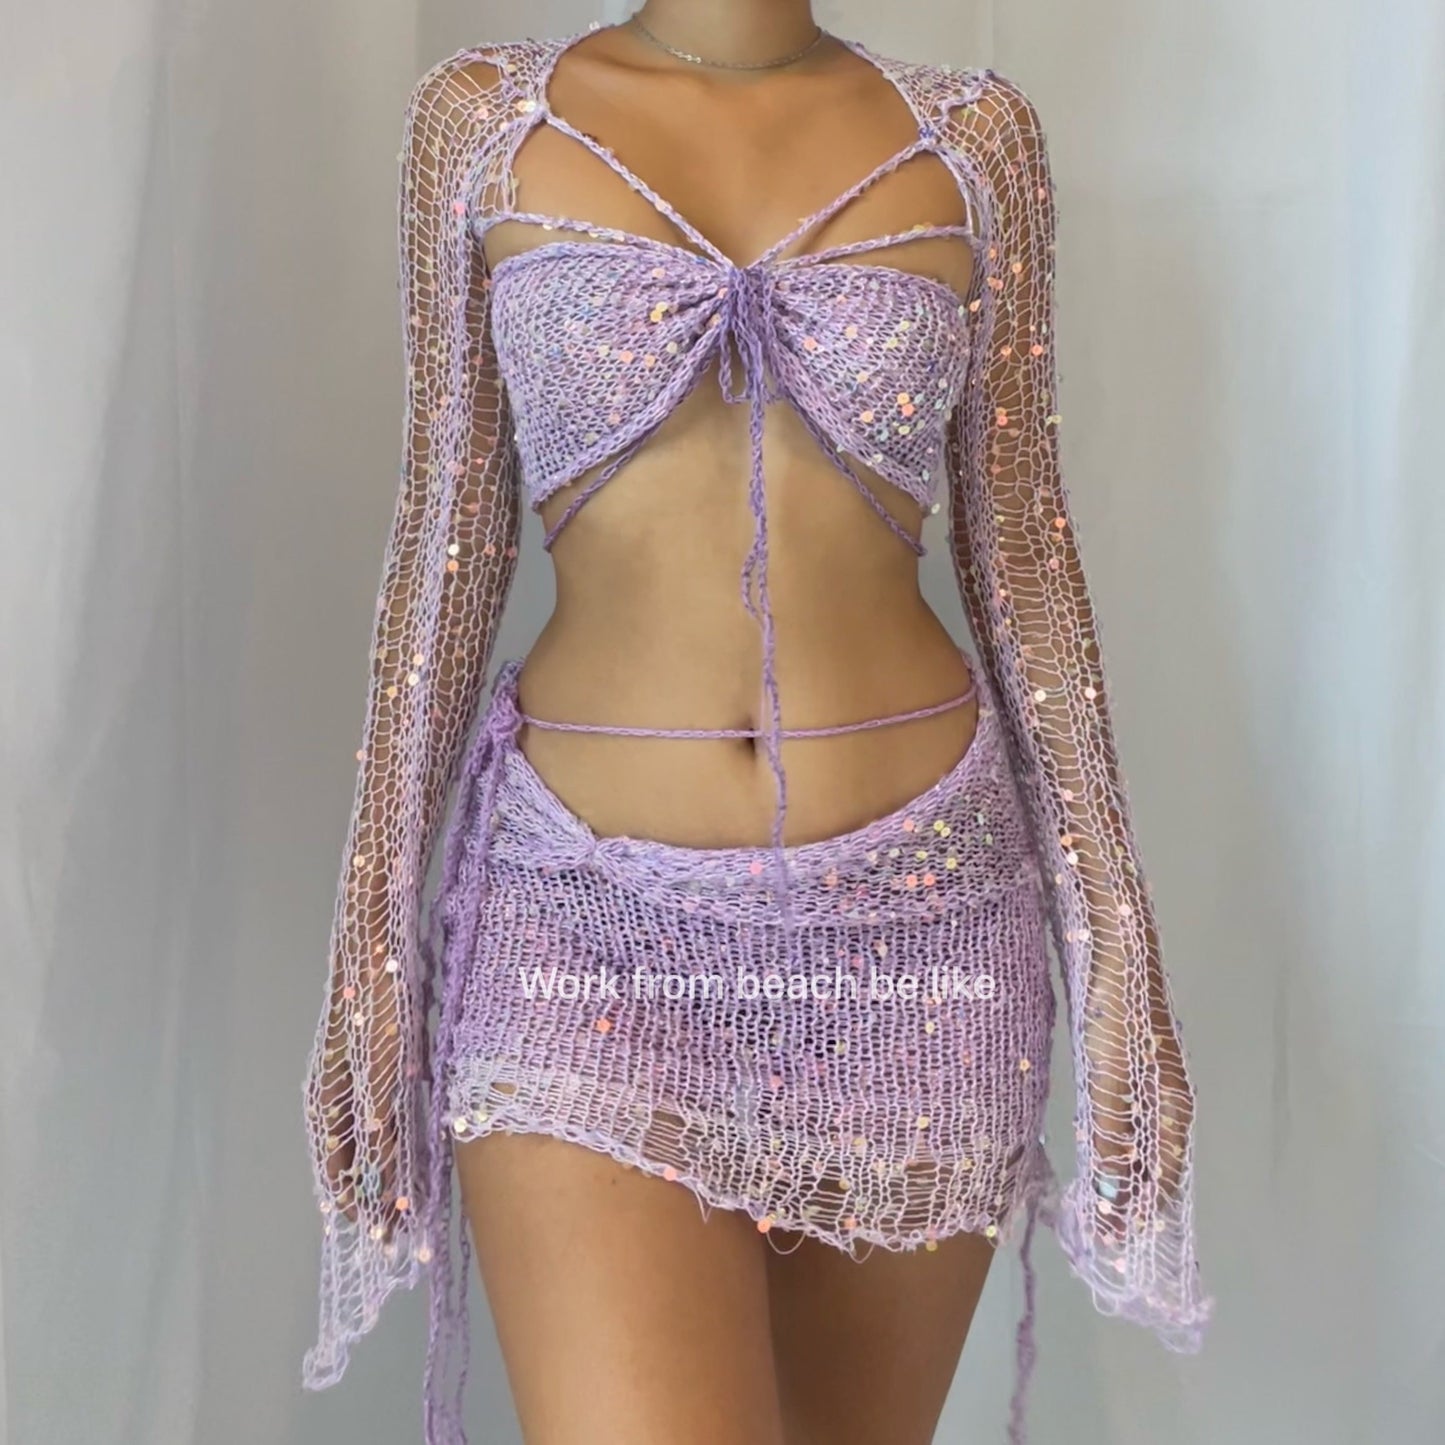 Butterfly set (Top & Skirt) - Pale Purple